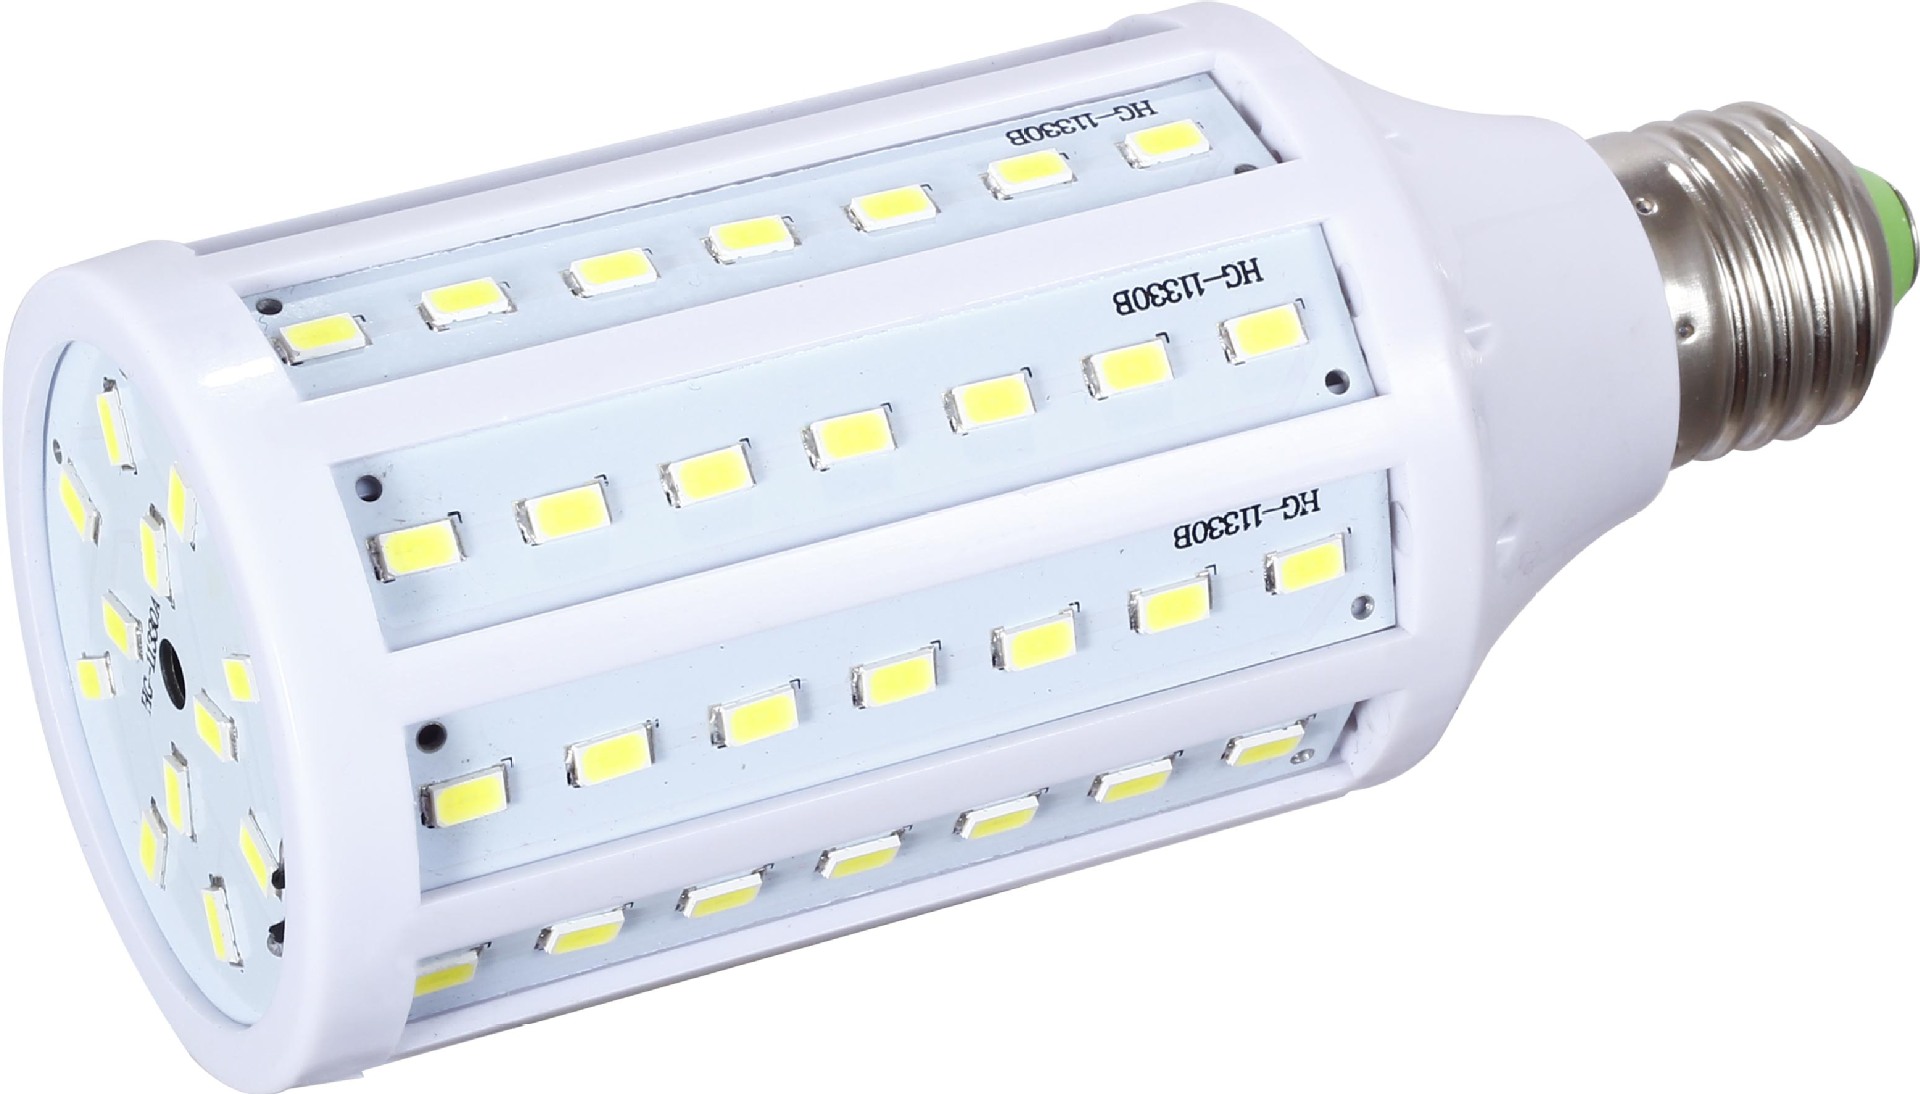 LED阻容降压G4灯专用高压贴片电容批发